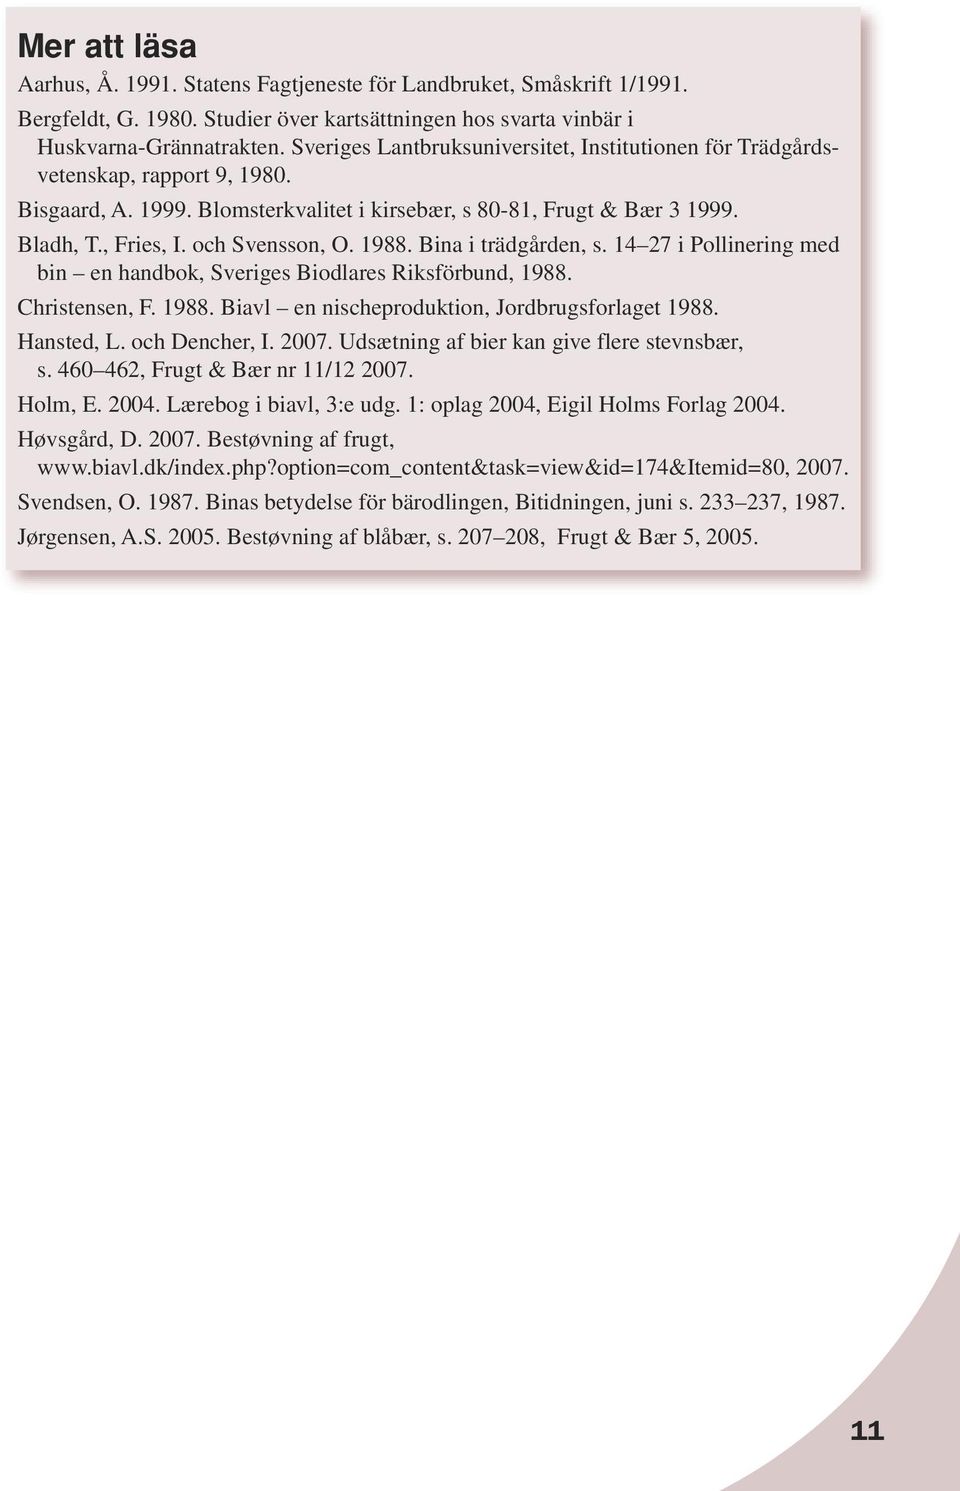 1988. Bina i trädgården, s. 14 27 i Pollinering med bin en handbok, Sveriges Biodlares Riksförbund, 1988. Christensen, F. 1988. Biavl en nischeproduktion, Jordbrugsforlaget 1988. Hansted, L.